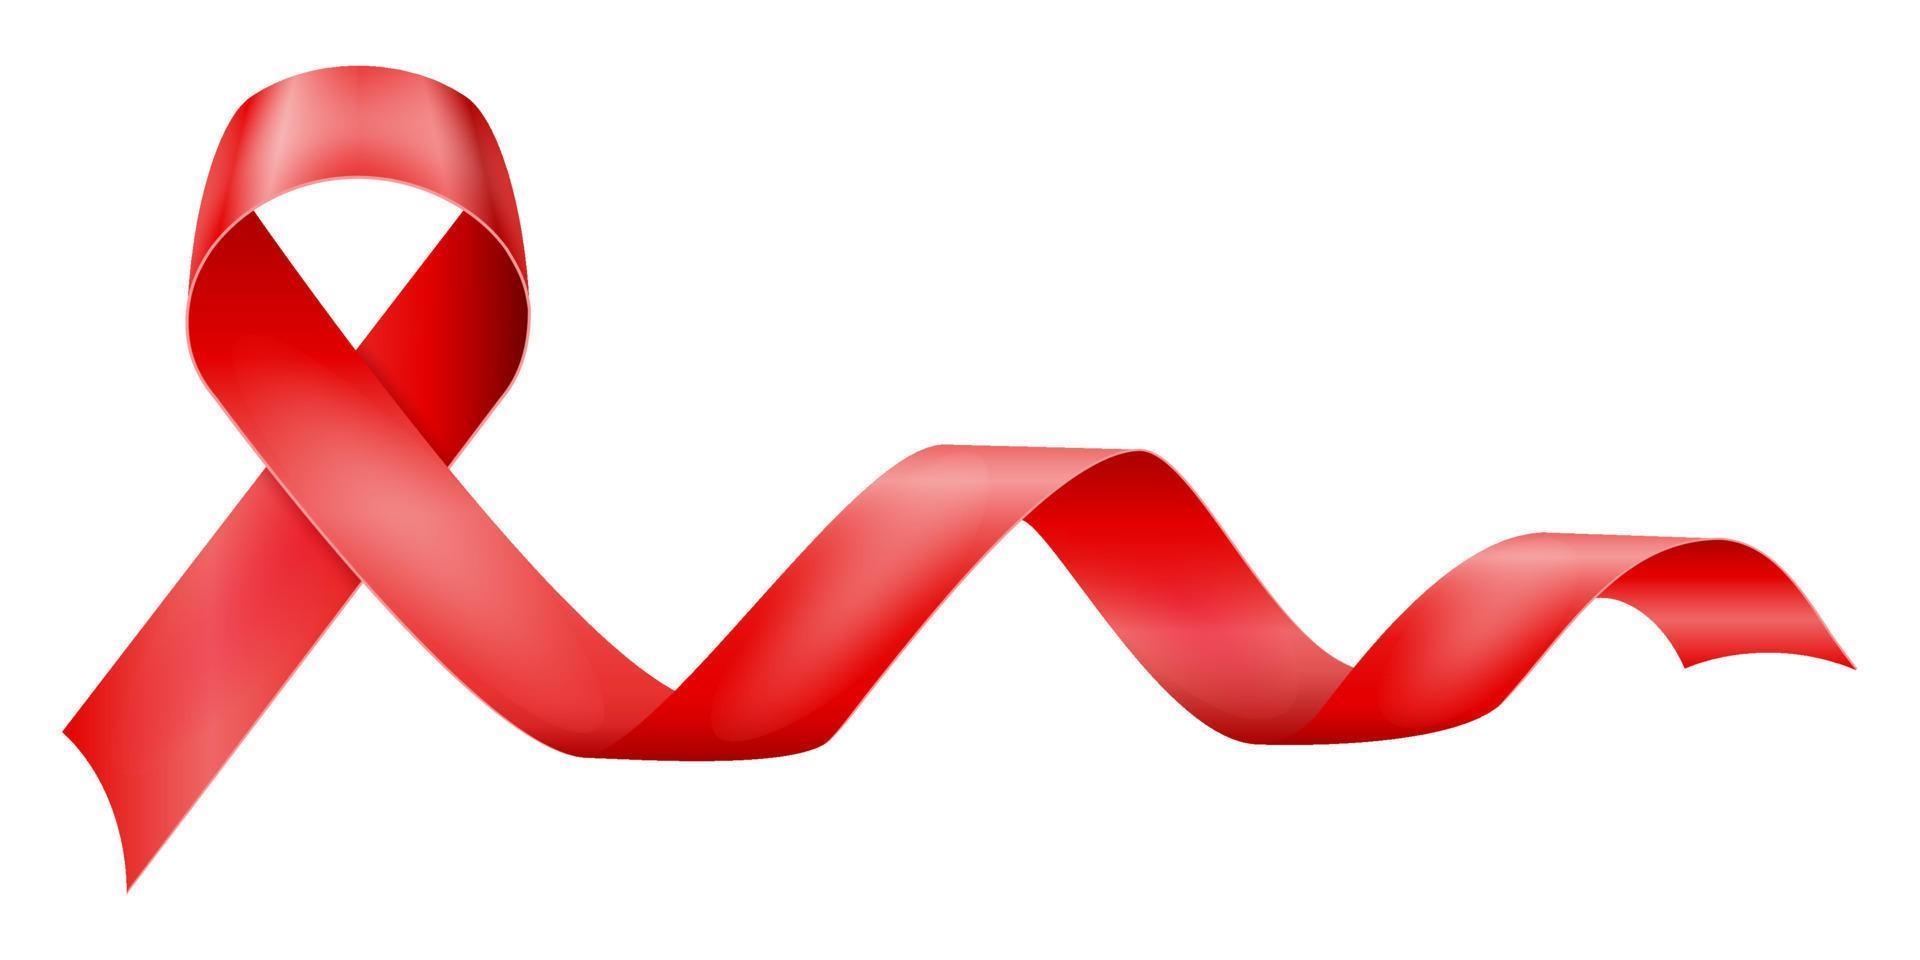 cinta brillante de seda roja en apoyo de la ilustración del vector de la enfermedad del sida aislada en el fondo blanco